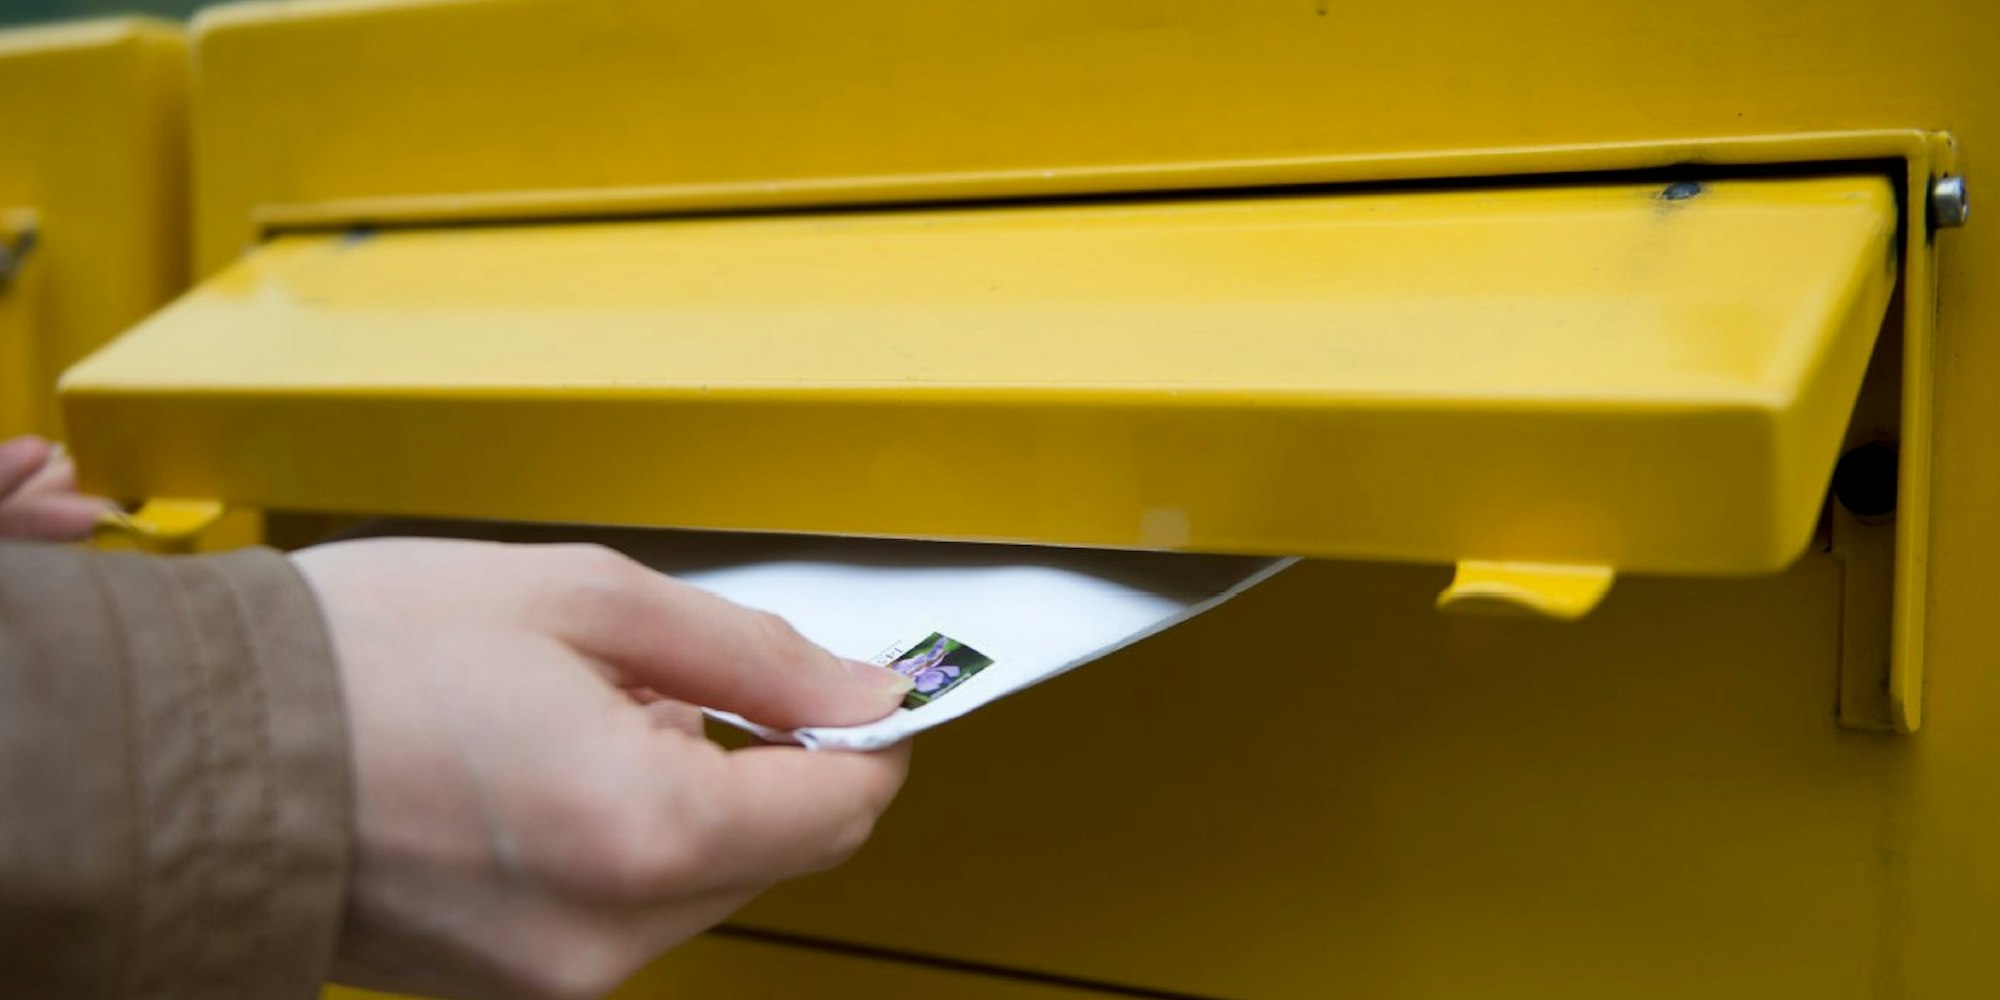 Briefe oder Pakete werden in den kommenden Tagen vermutlich etwas länger unterwegs sein. Denn bei der Post wird gestreikt.